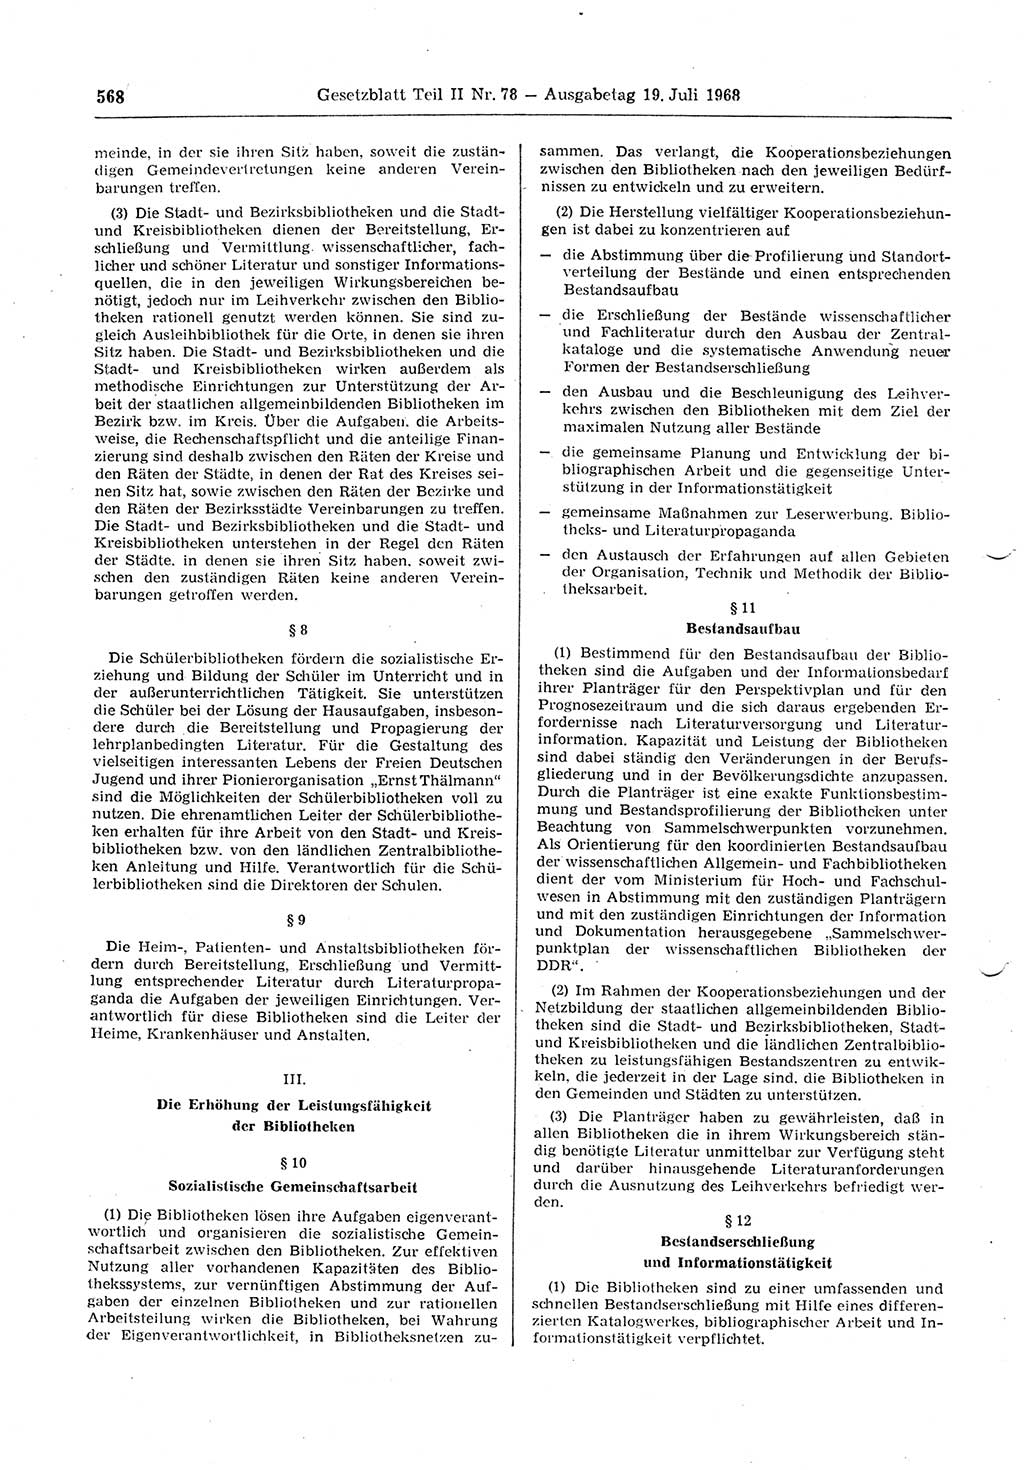 Gesetzblatt (GBl.) der Deutschen Demokratischen Republik (DDR) Teil ⅠⅠ 1968, Seite 568 (GBl. DDR ⅠⅠ 1968, S. 568)